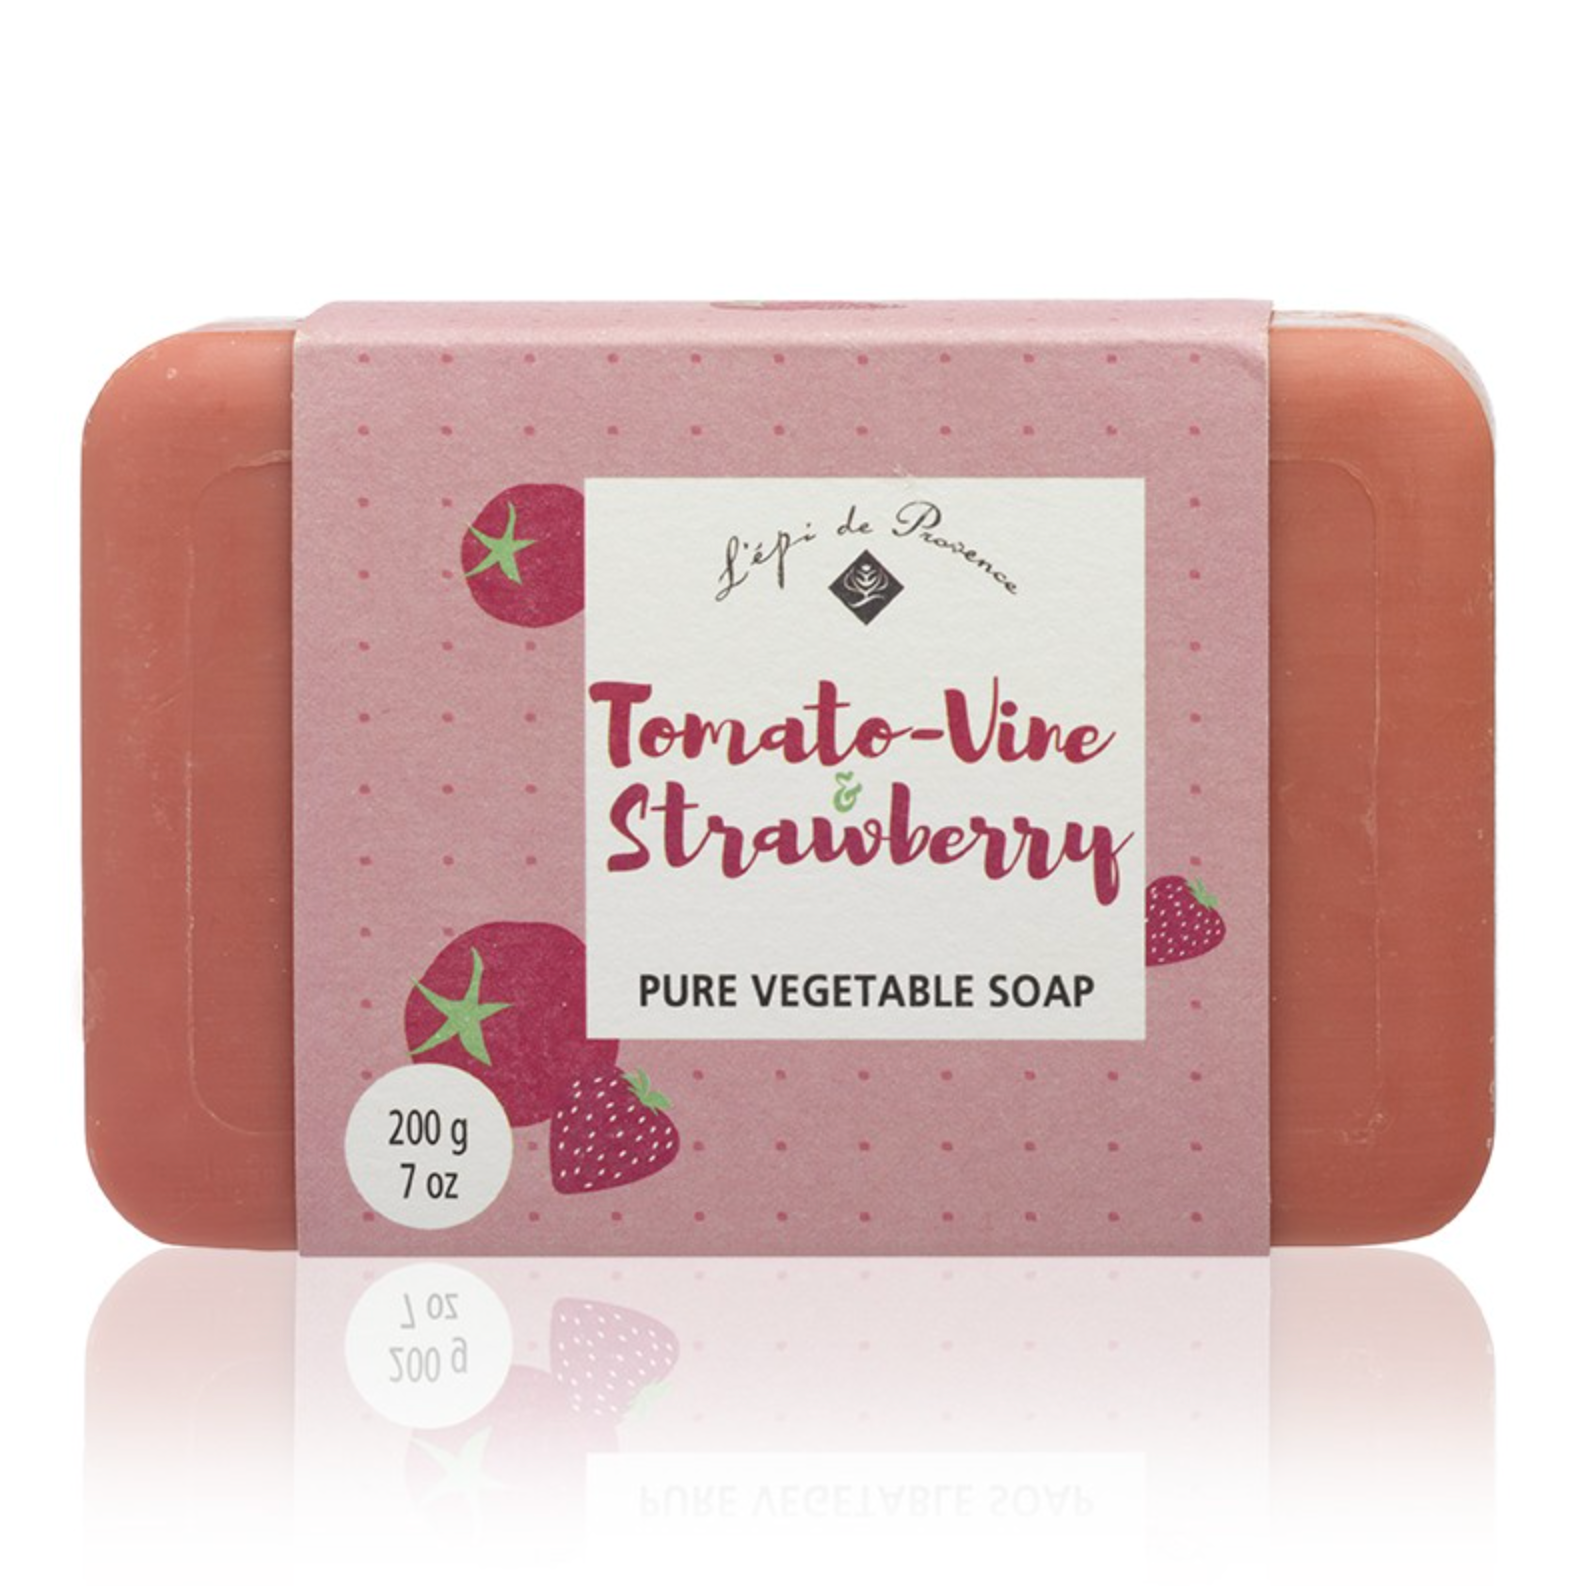 Strawberry Tomato Vine Soap - Heart of the Home LV